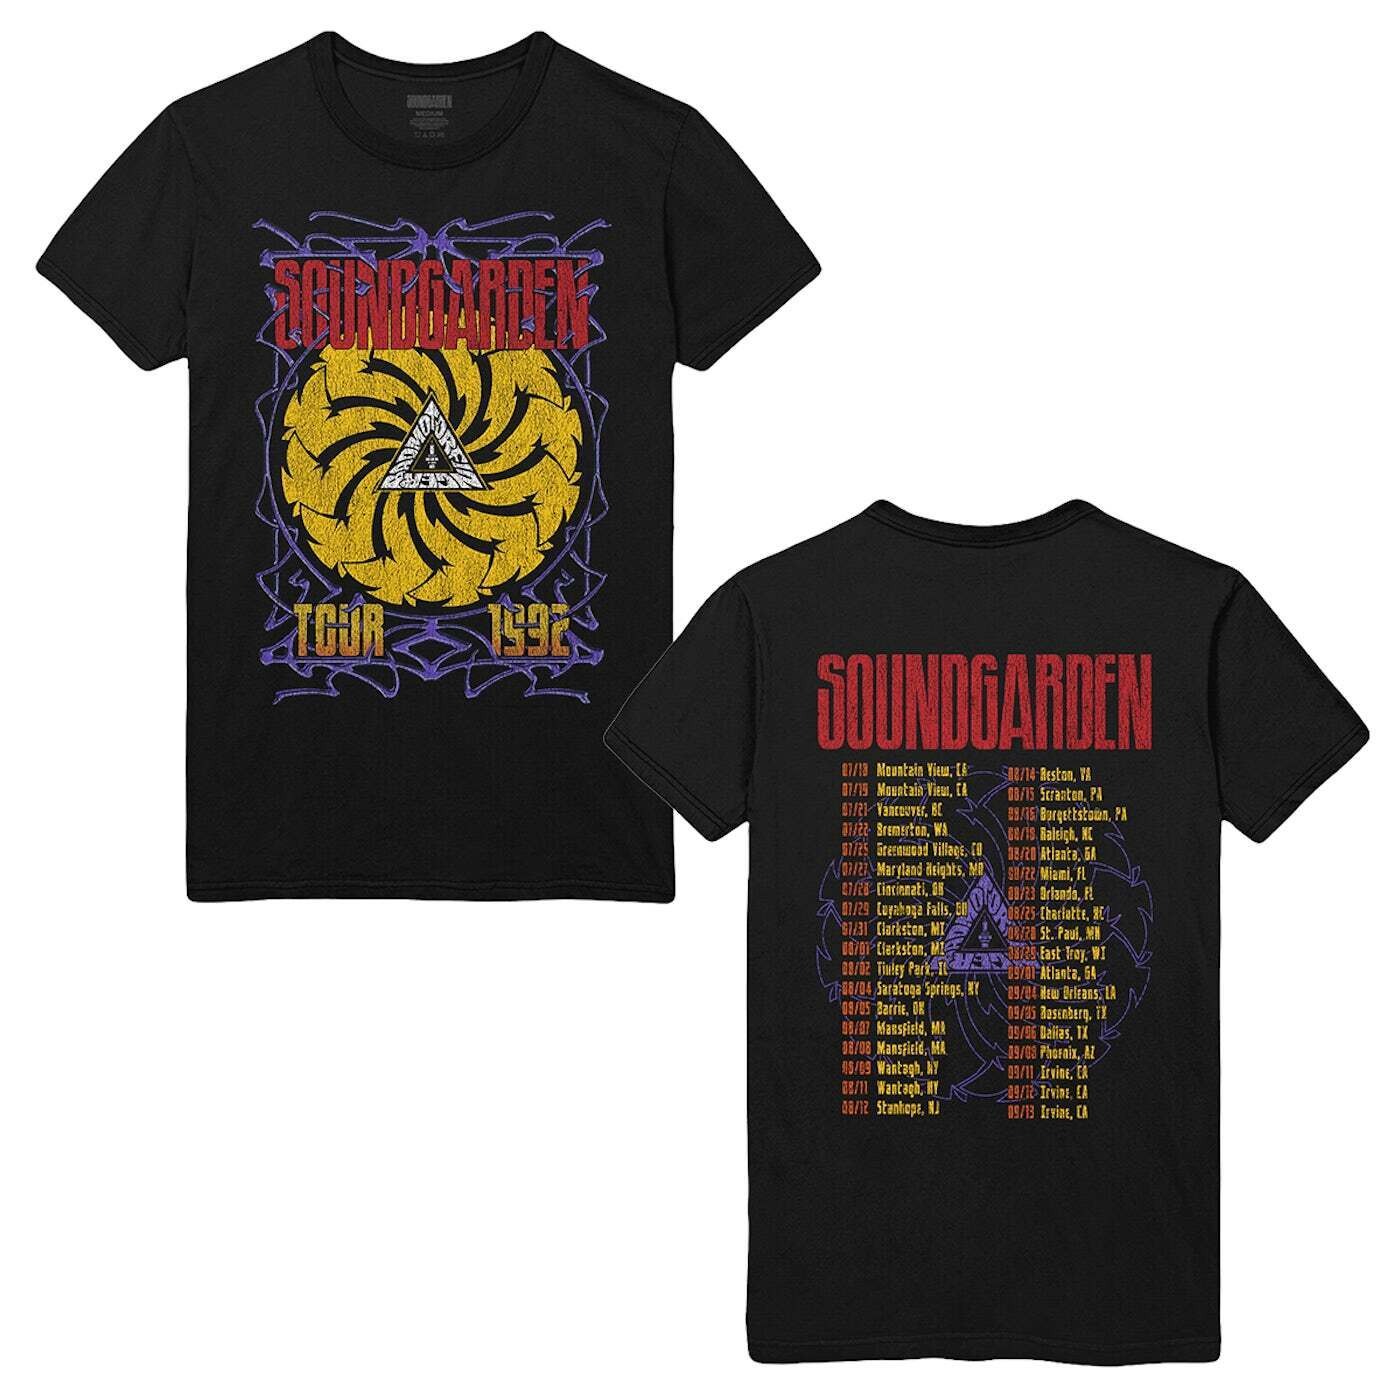 Soundgarden Tour 1992 2 sided basic black Unisex T shirt Reprint digital